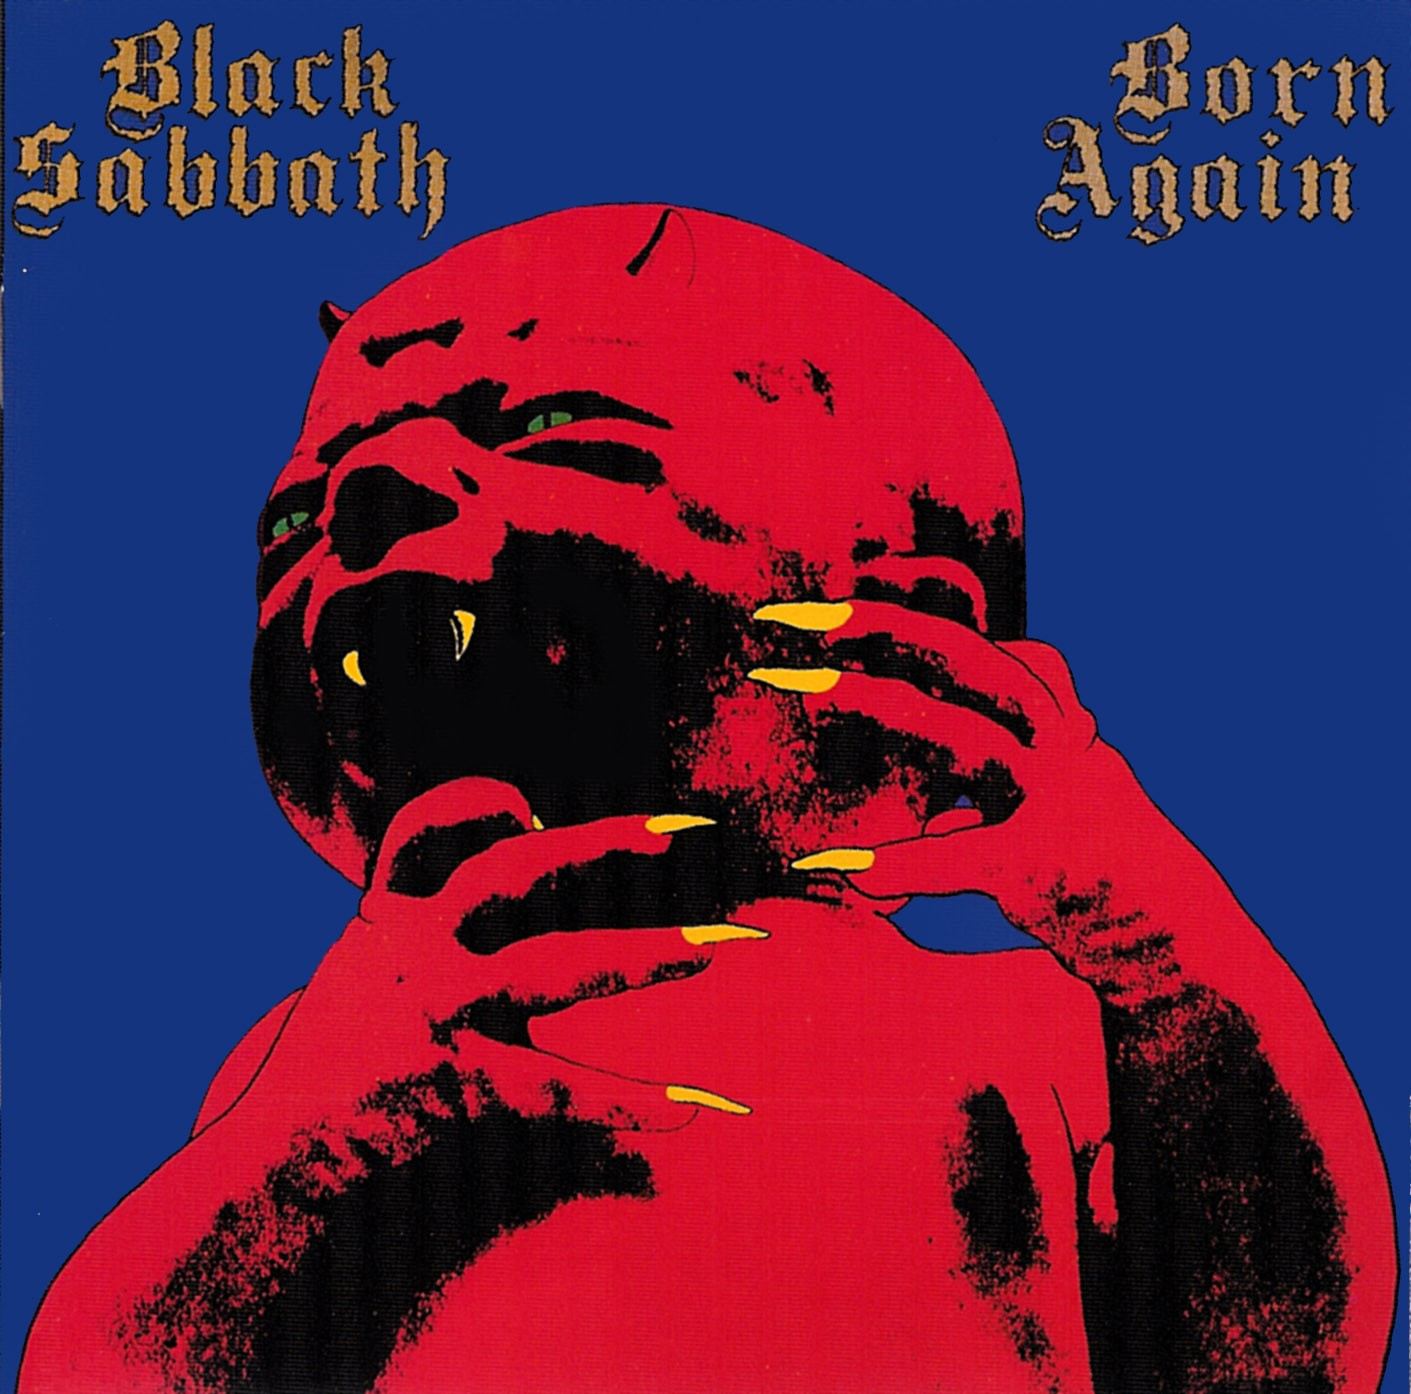 Album artwork for 'Born Again' by Black Sabbath